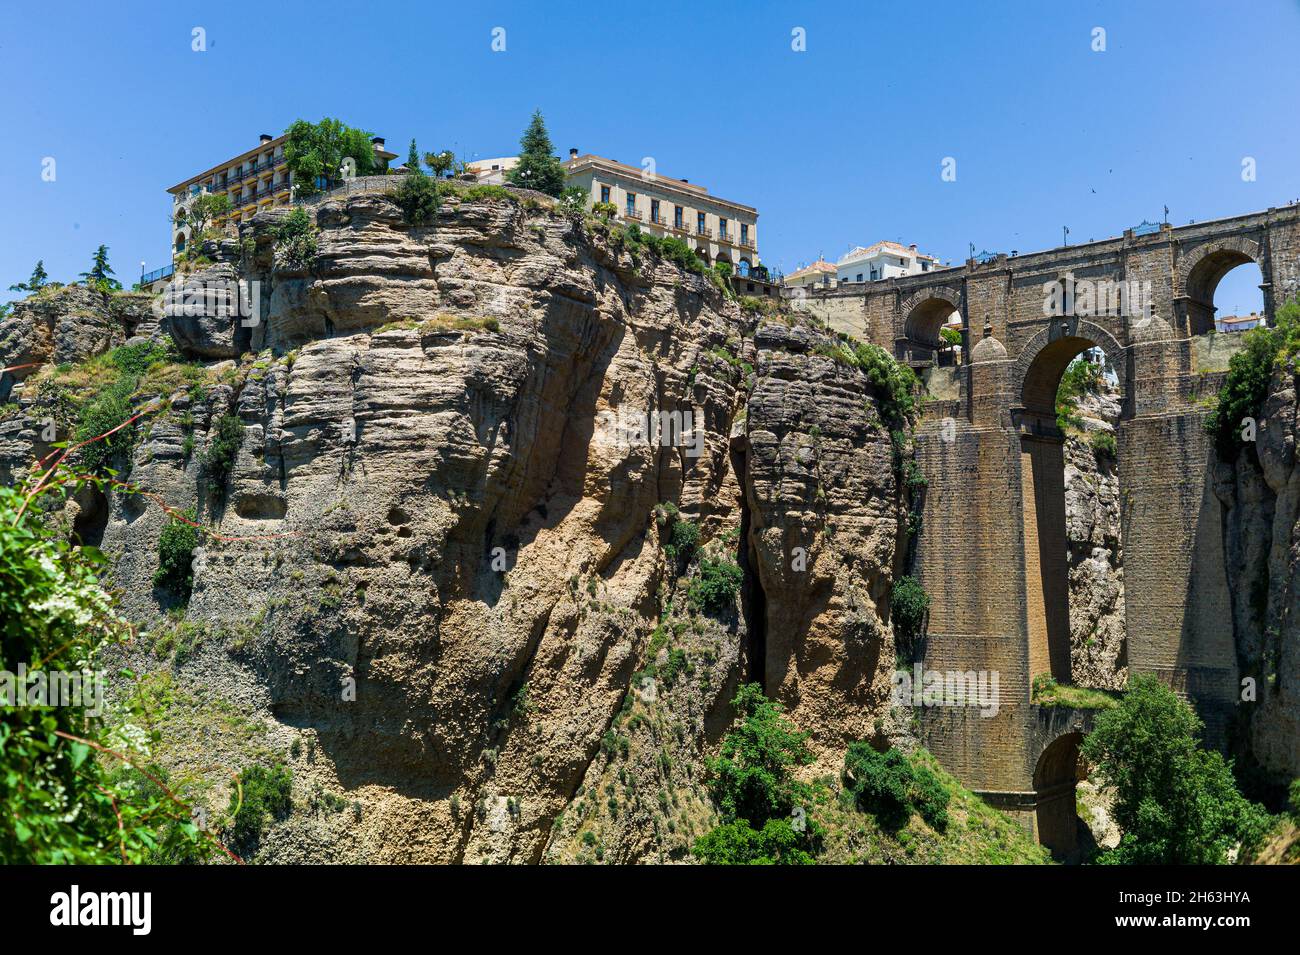 le puente nuevo (nouveau pont) s'étend sur le gouffre de 120 mètres de profondeur qui porte la rivière guadaleva–­n et divise la ville de ronda, la gorge el tajo. ronda, provence de malaga, andalousie, espagne. Banque D'Images